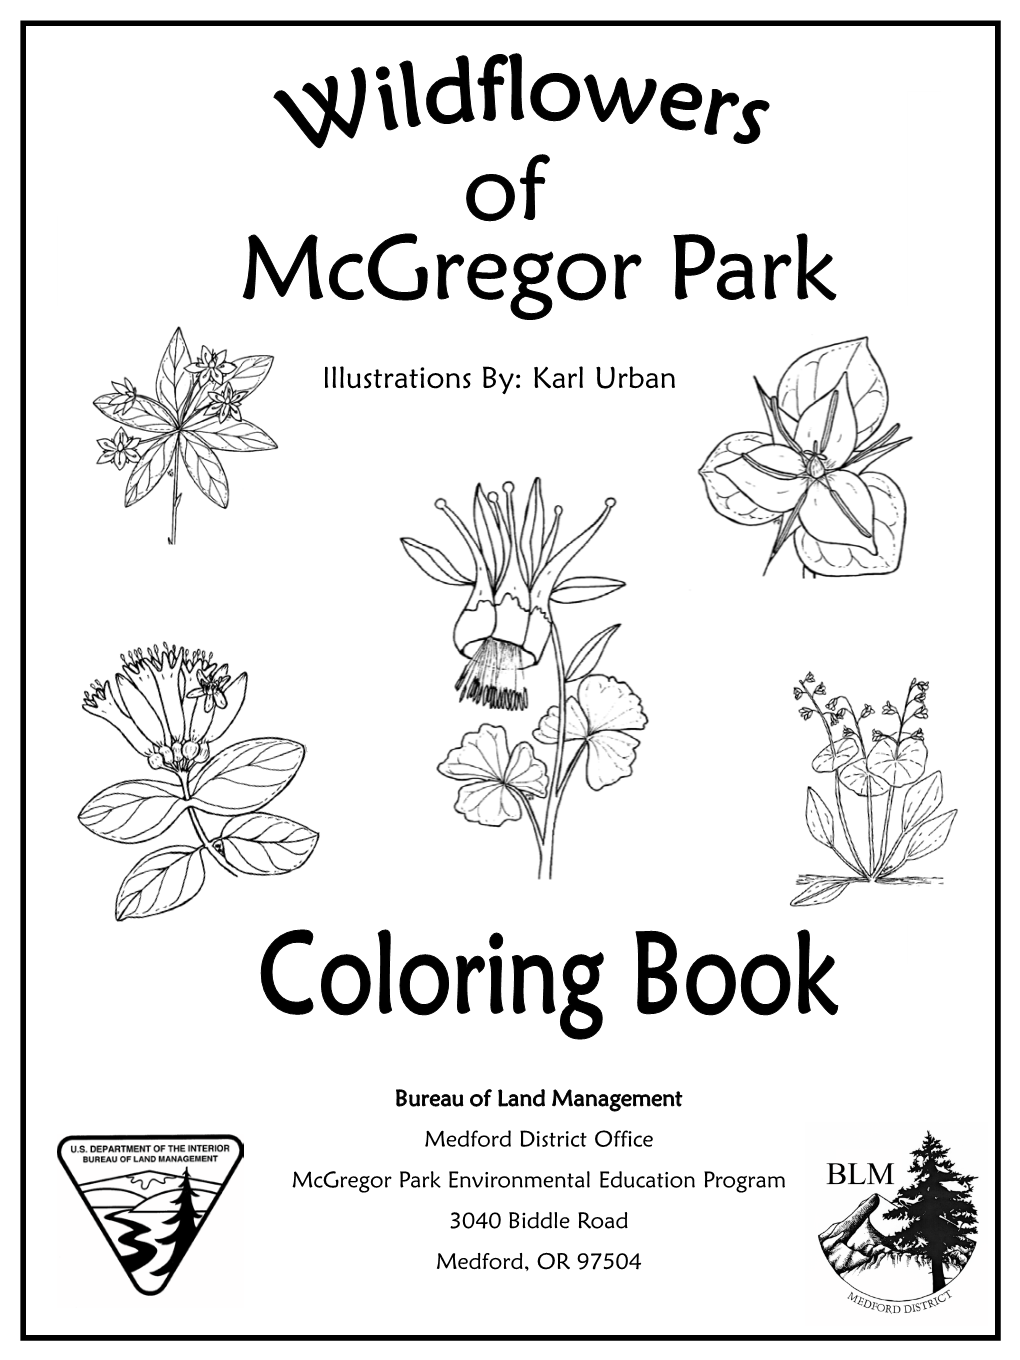 Wildflowers of Mcgregor Park